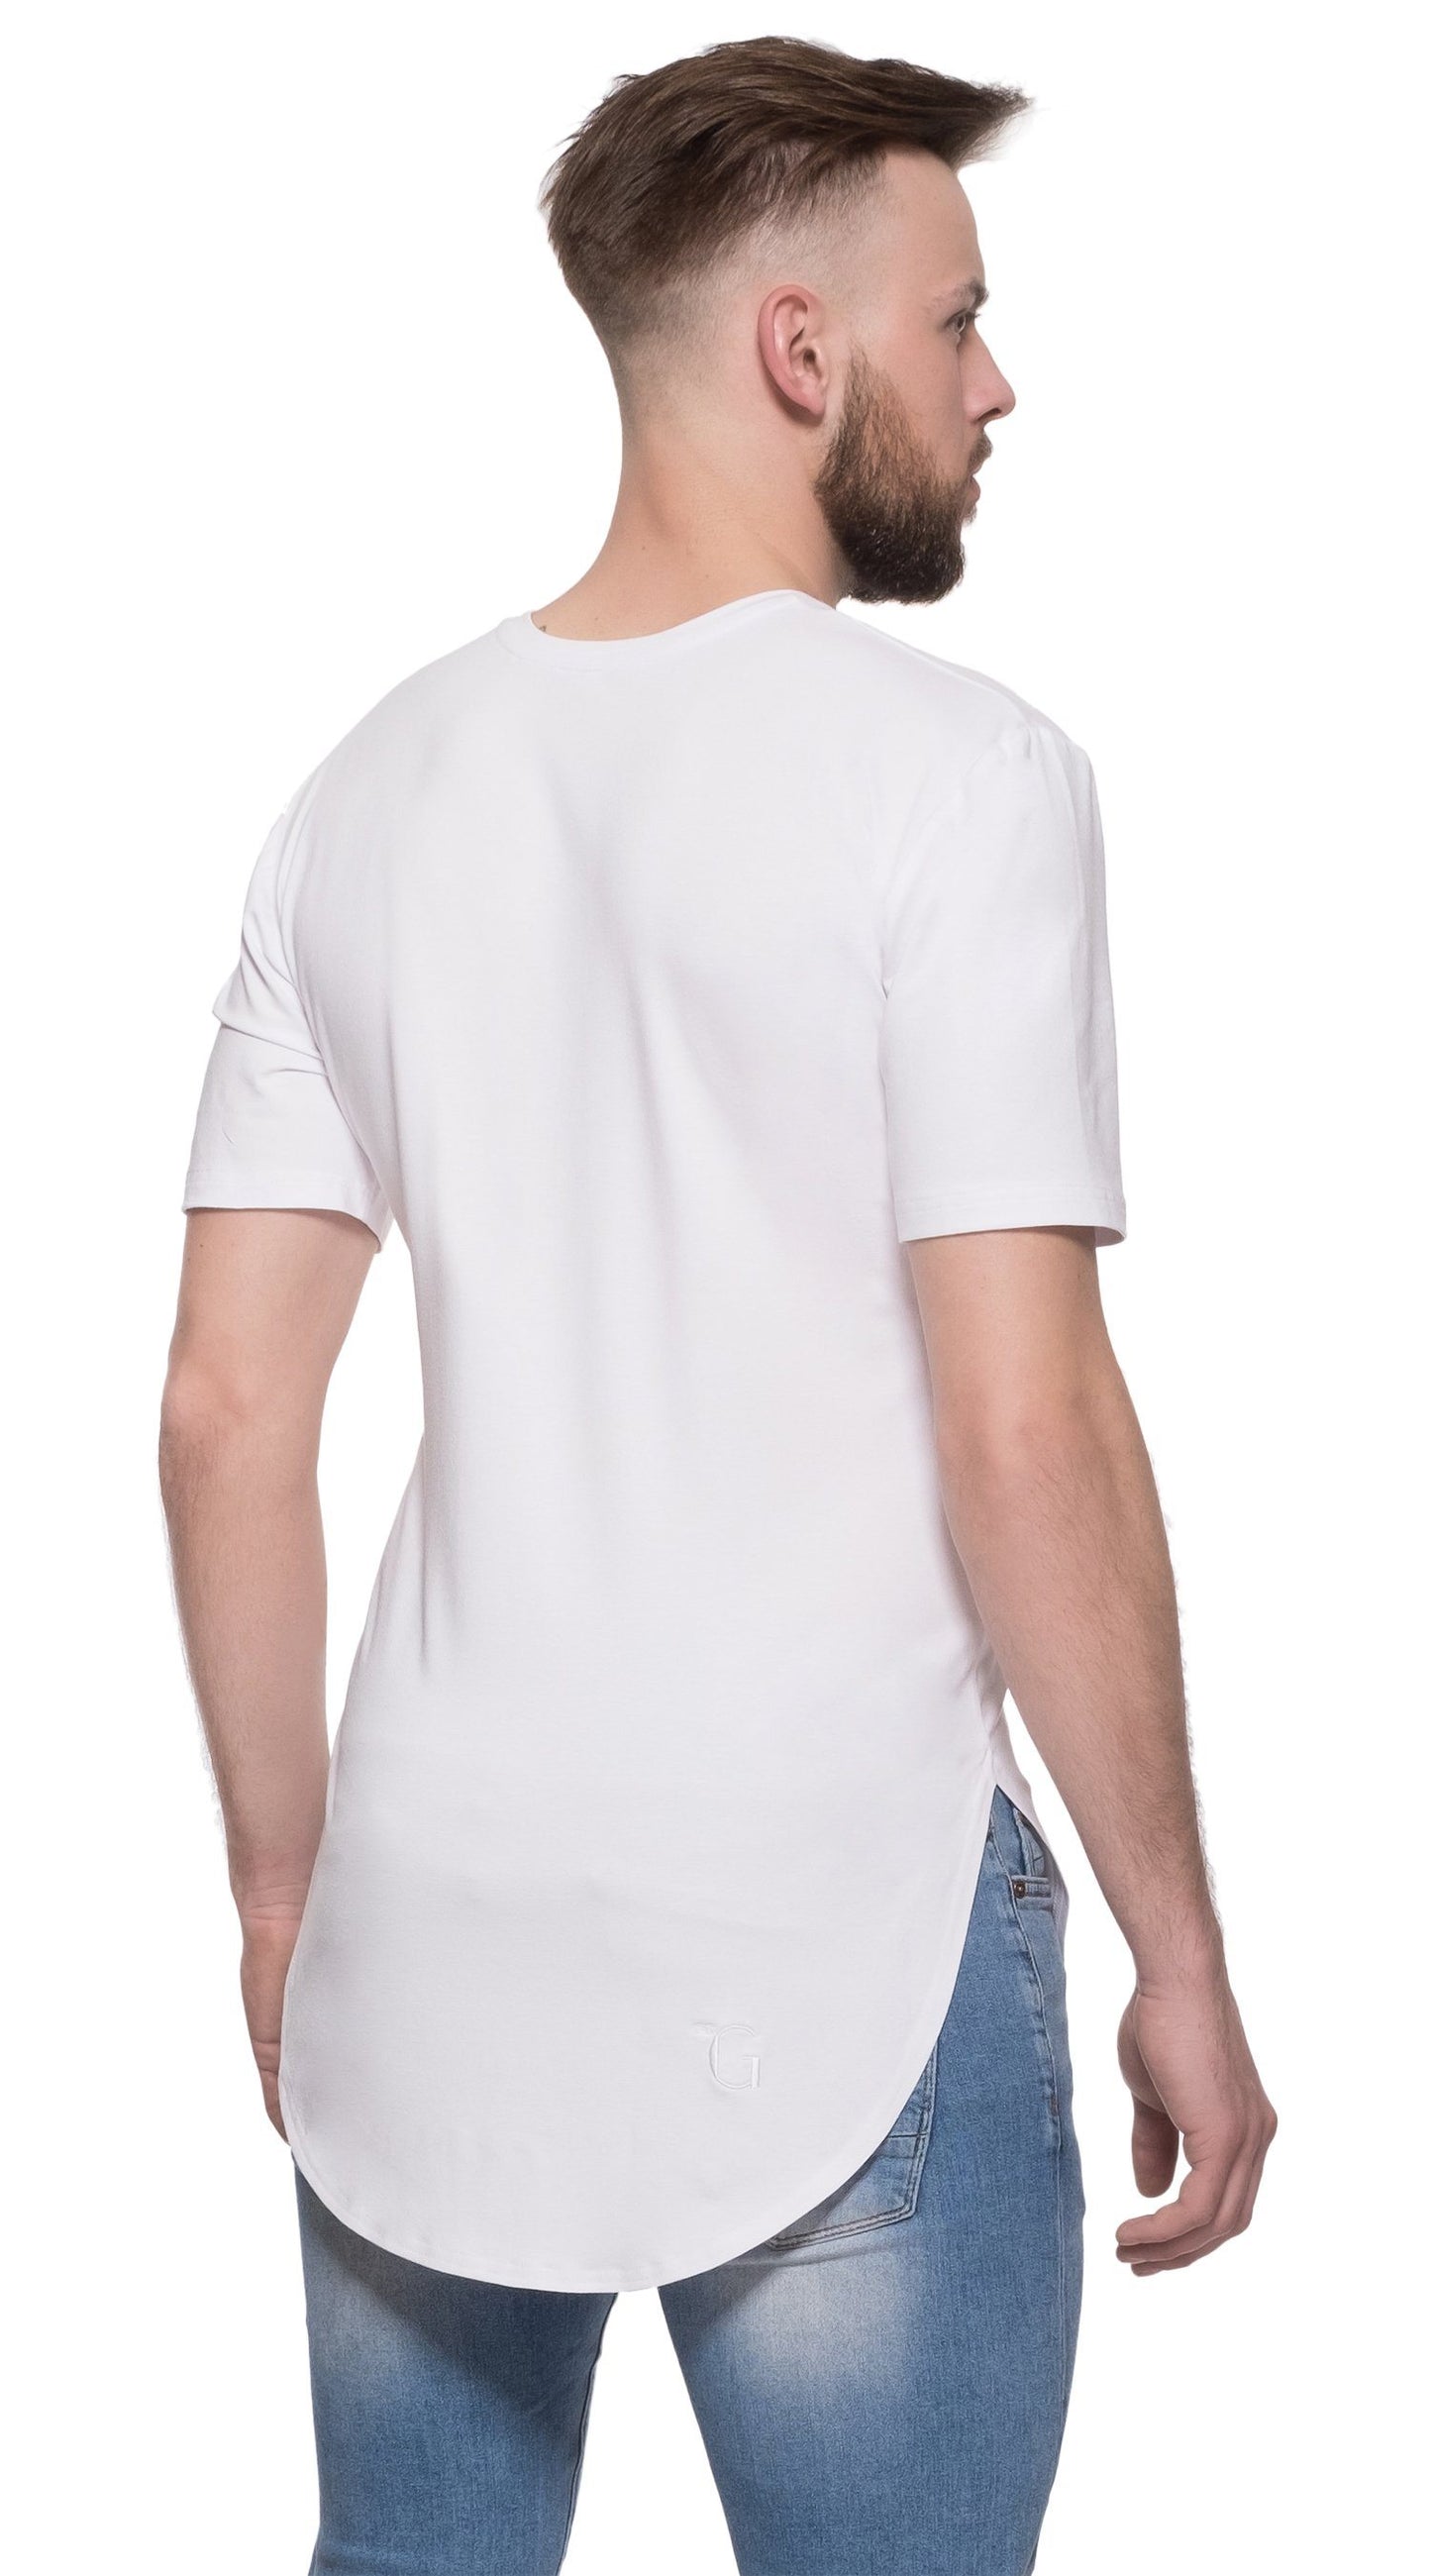 TheG Man viskózové Basic 2/2 dlhé tričko // biele